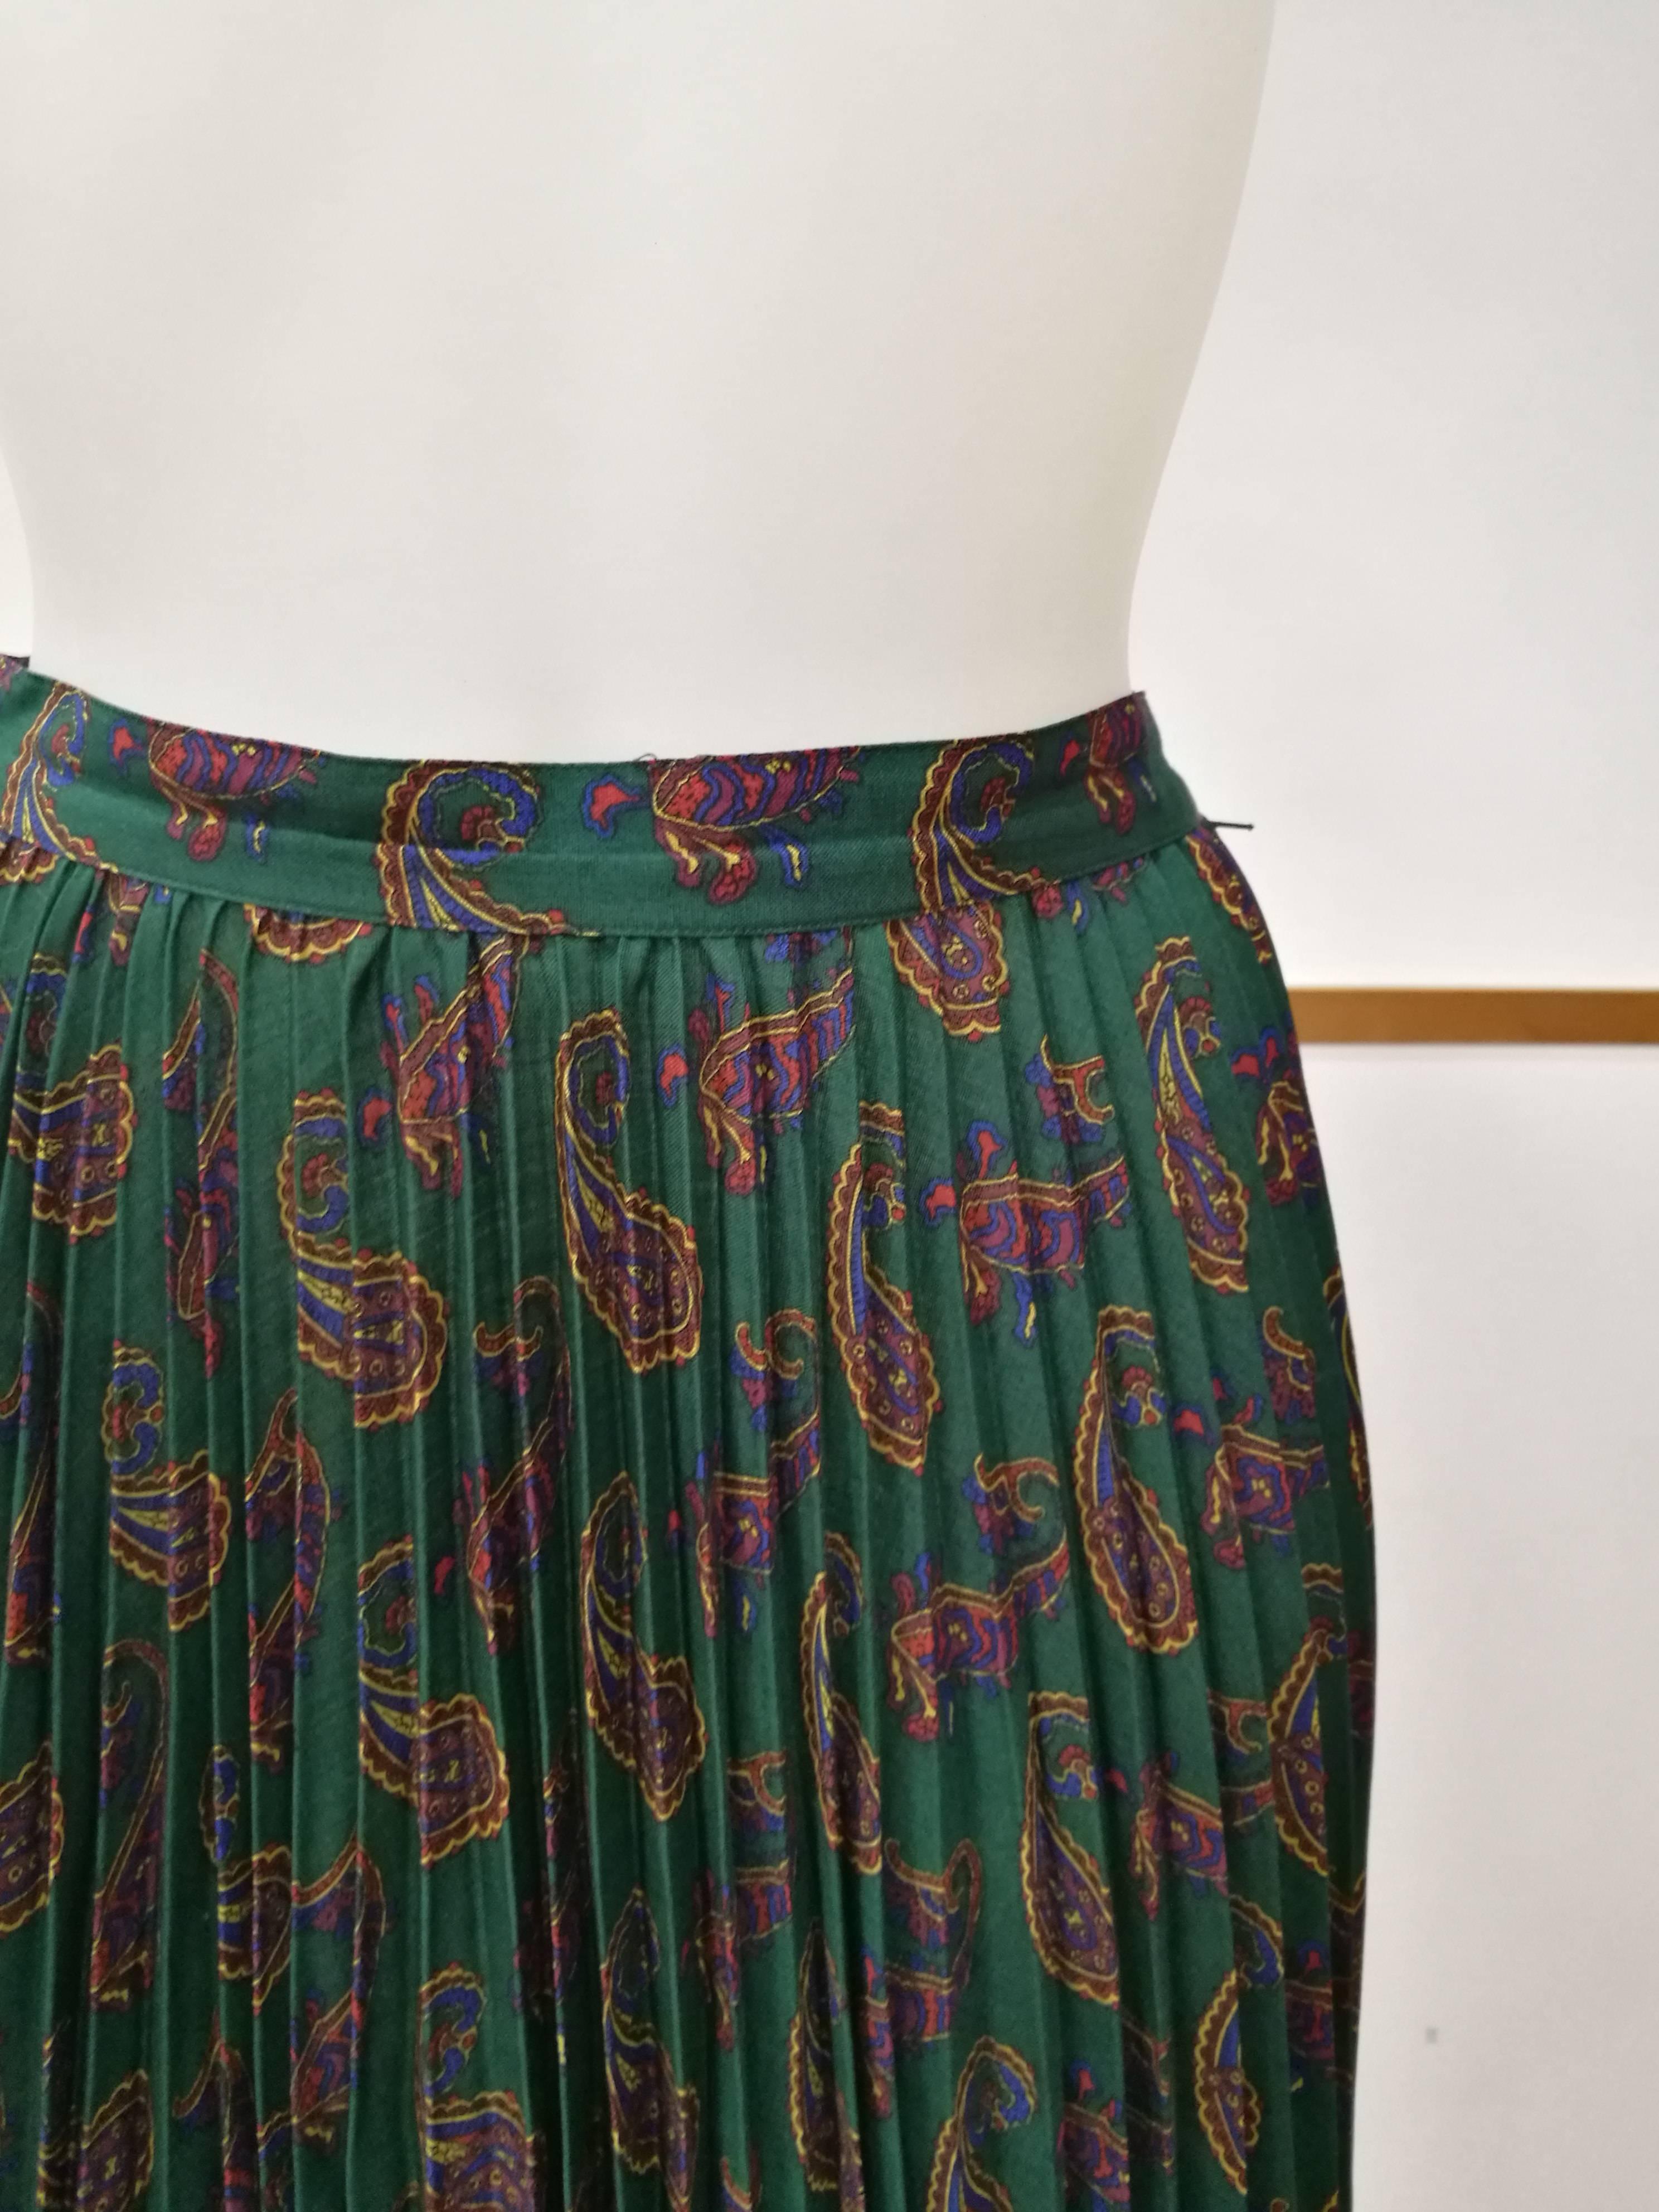 jupe verte plissée Cacharel des années 1980

Totalement fabriqué en Italie dans une gamme de taille 38

Composition : Laine